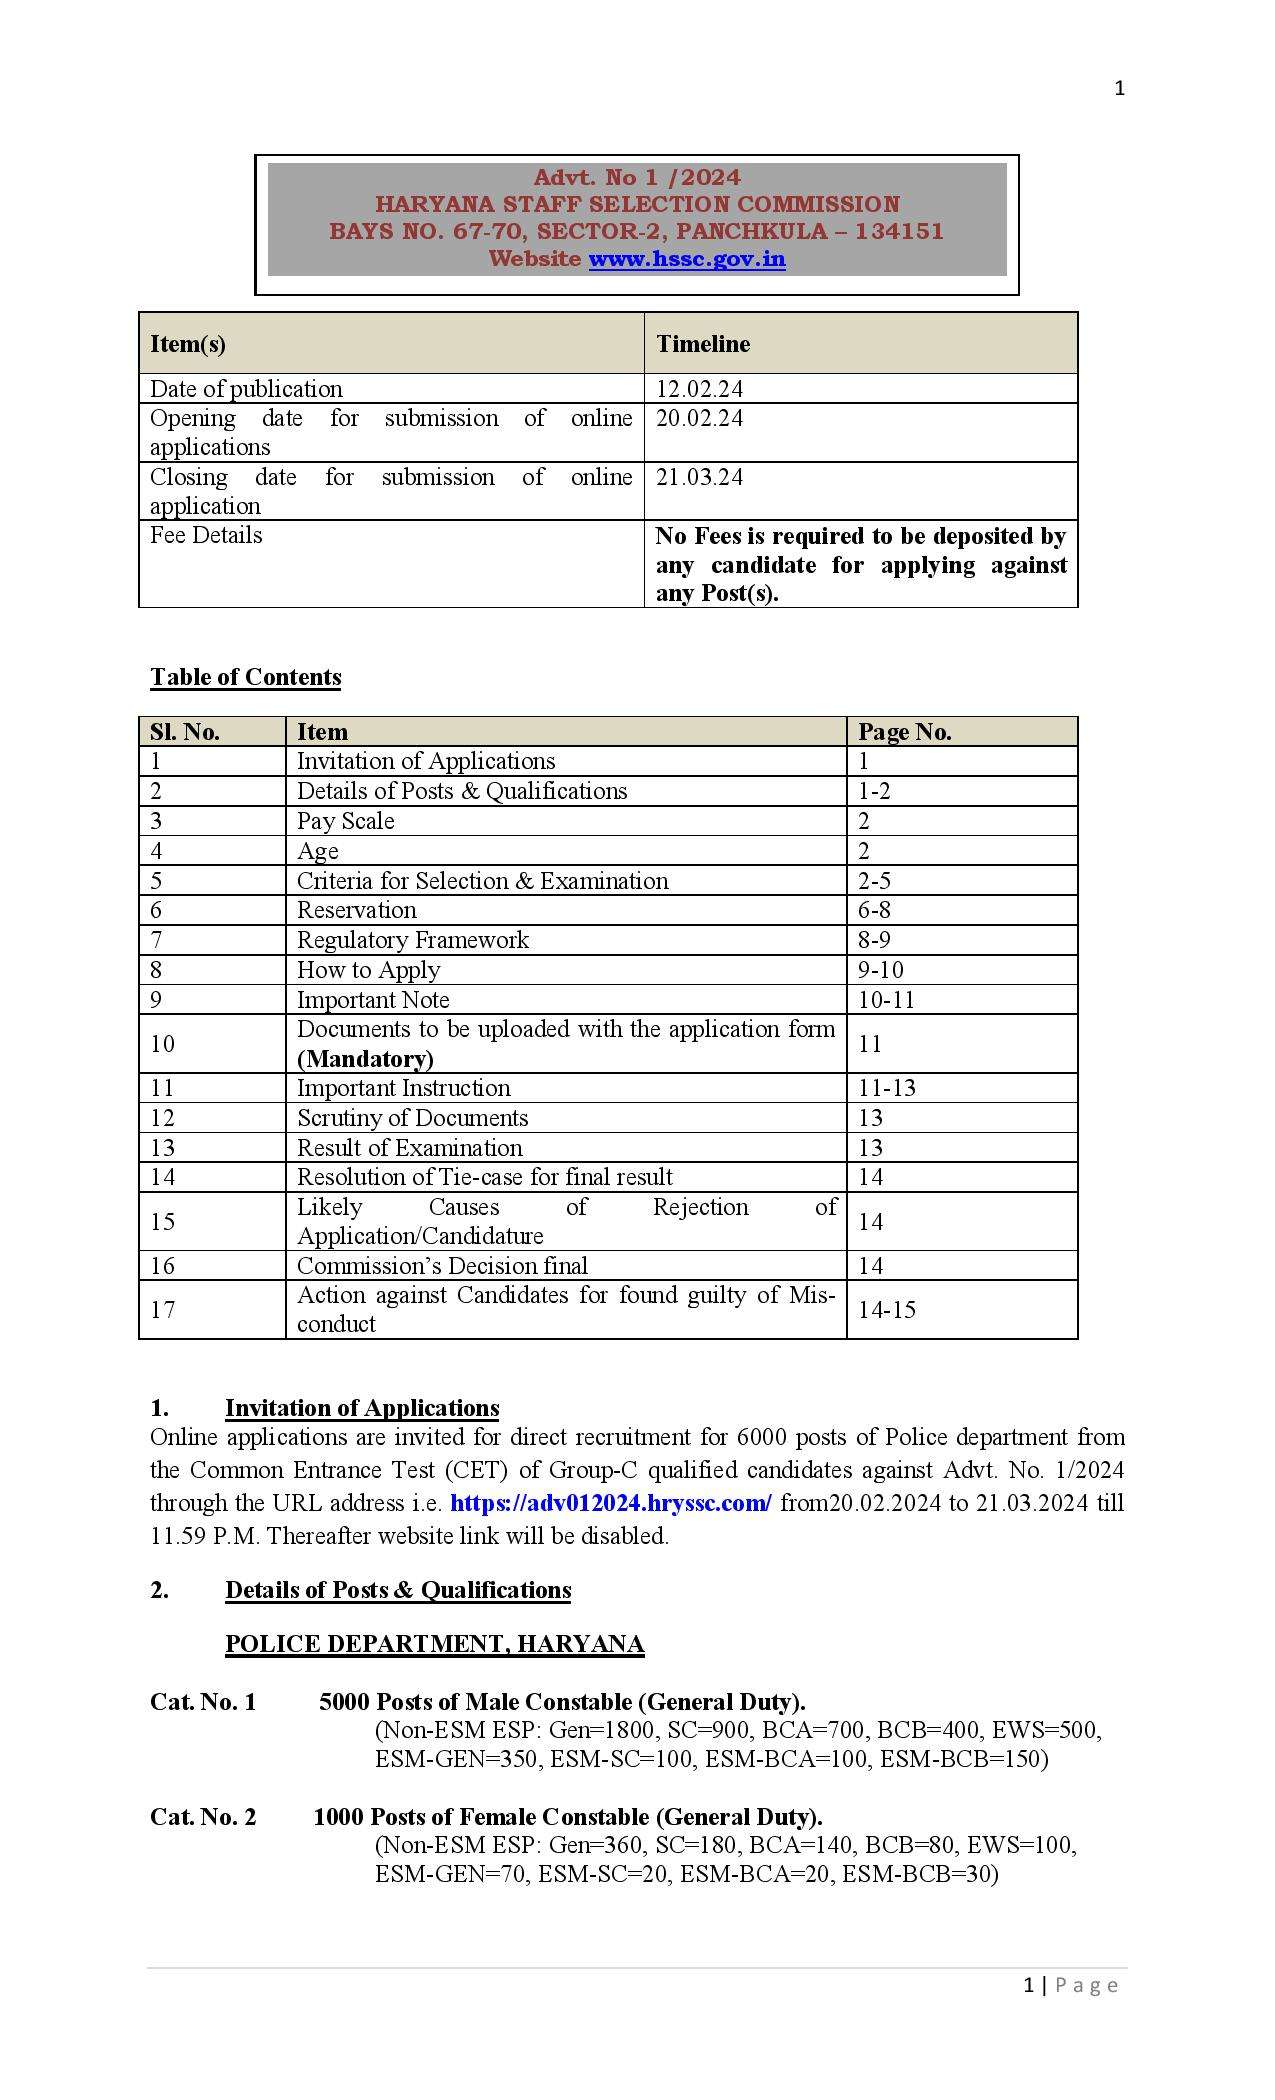 HSSC Police Jobs: हरियाणा पुलिस में 6000 कांस्टेबल पदों पर भर्ती का नोटिफिकेशन जारी, 20 फरवरी से आवेदन शुरू1